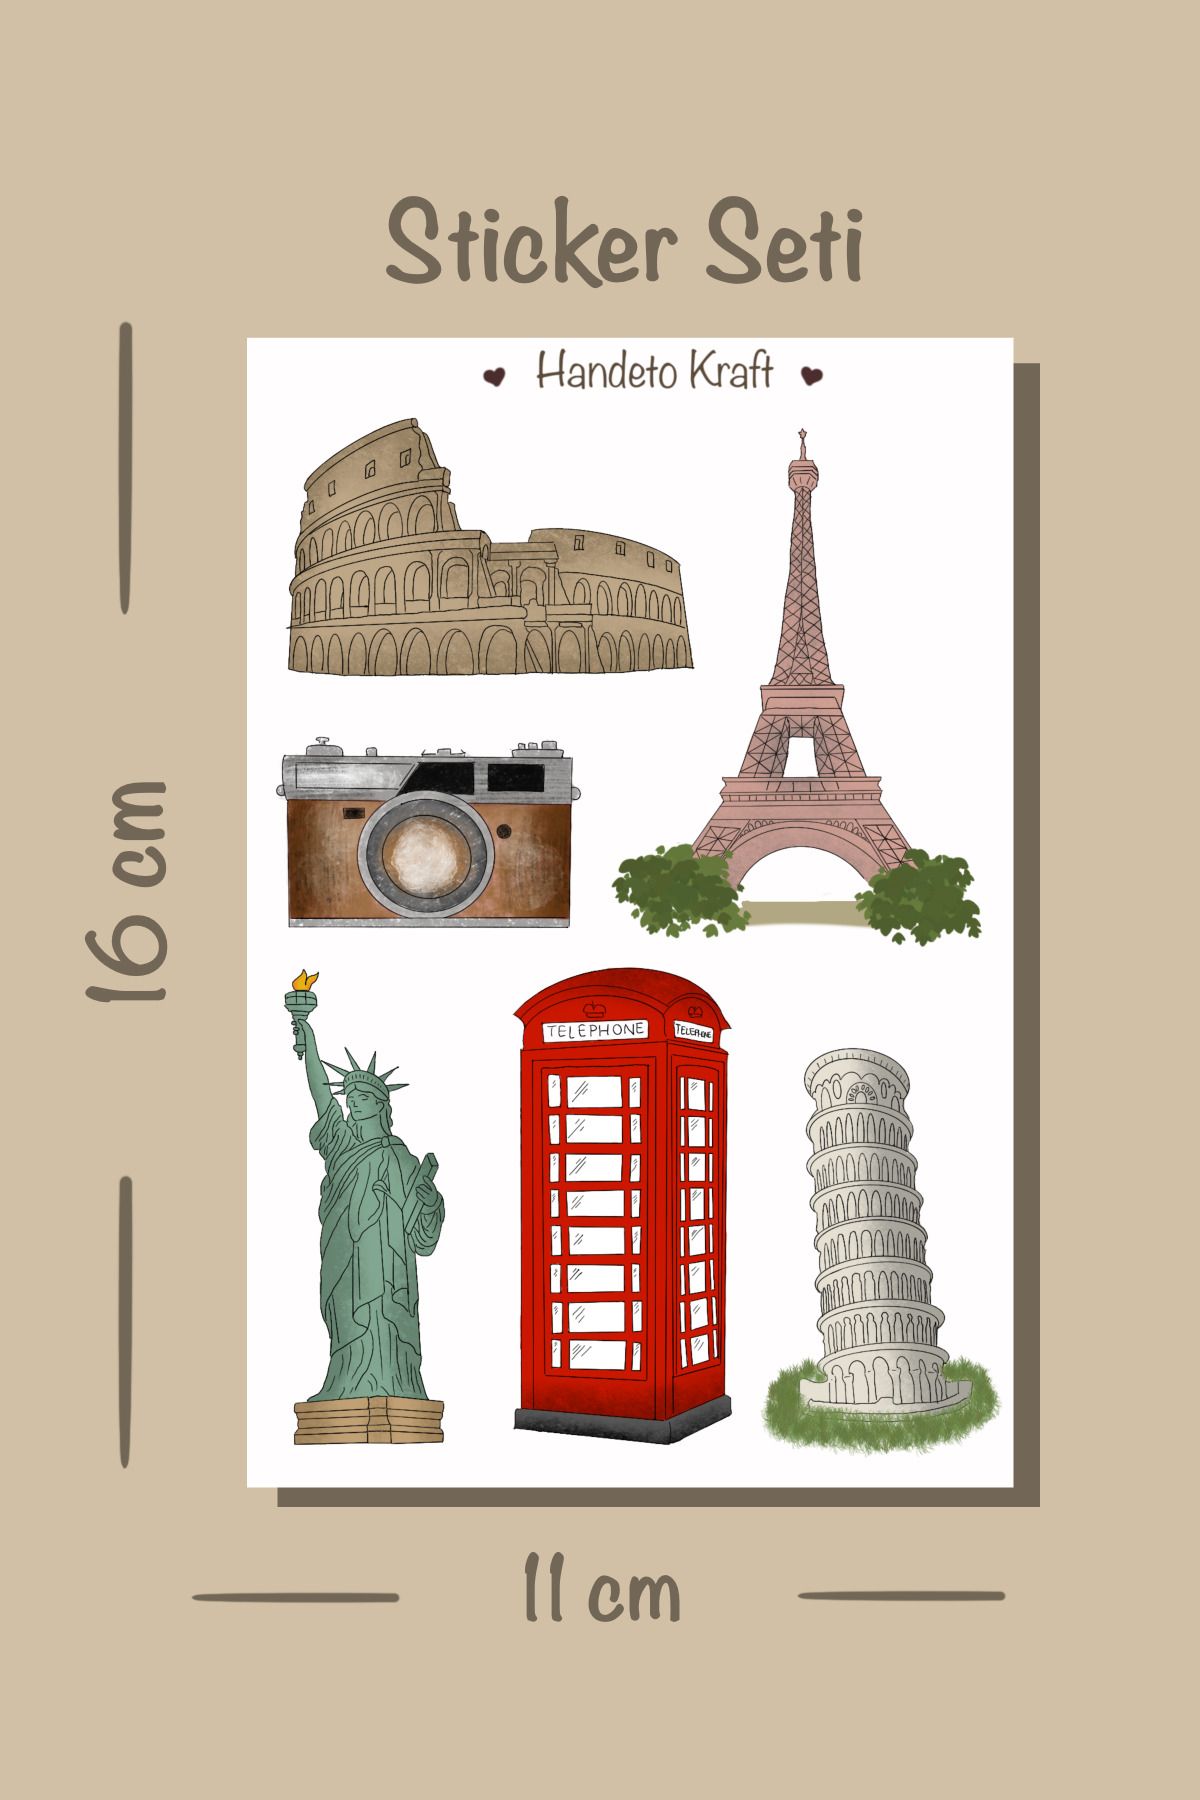 Handeto Kraft Ülkeler Temalı Valiz Sticker Seti (11X16 CM, PLASTİK YAPIŞKANLI KAĞIT, VALİZ, LAPTOP, TELEFON)